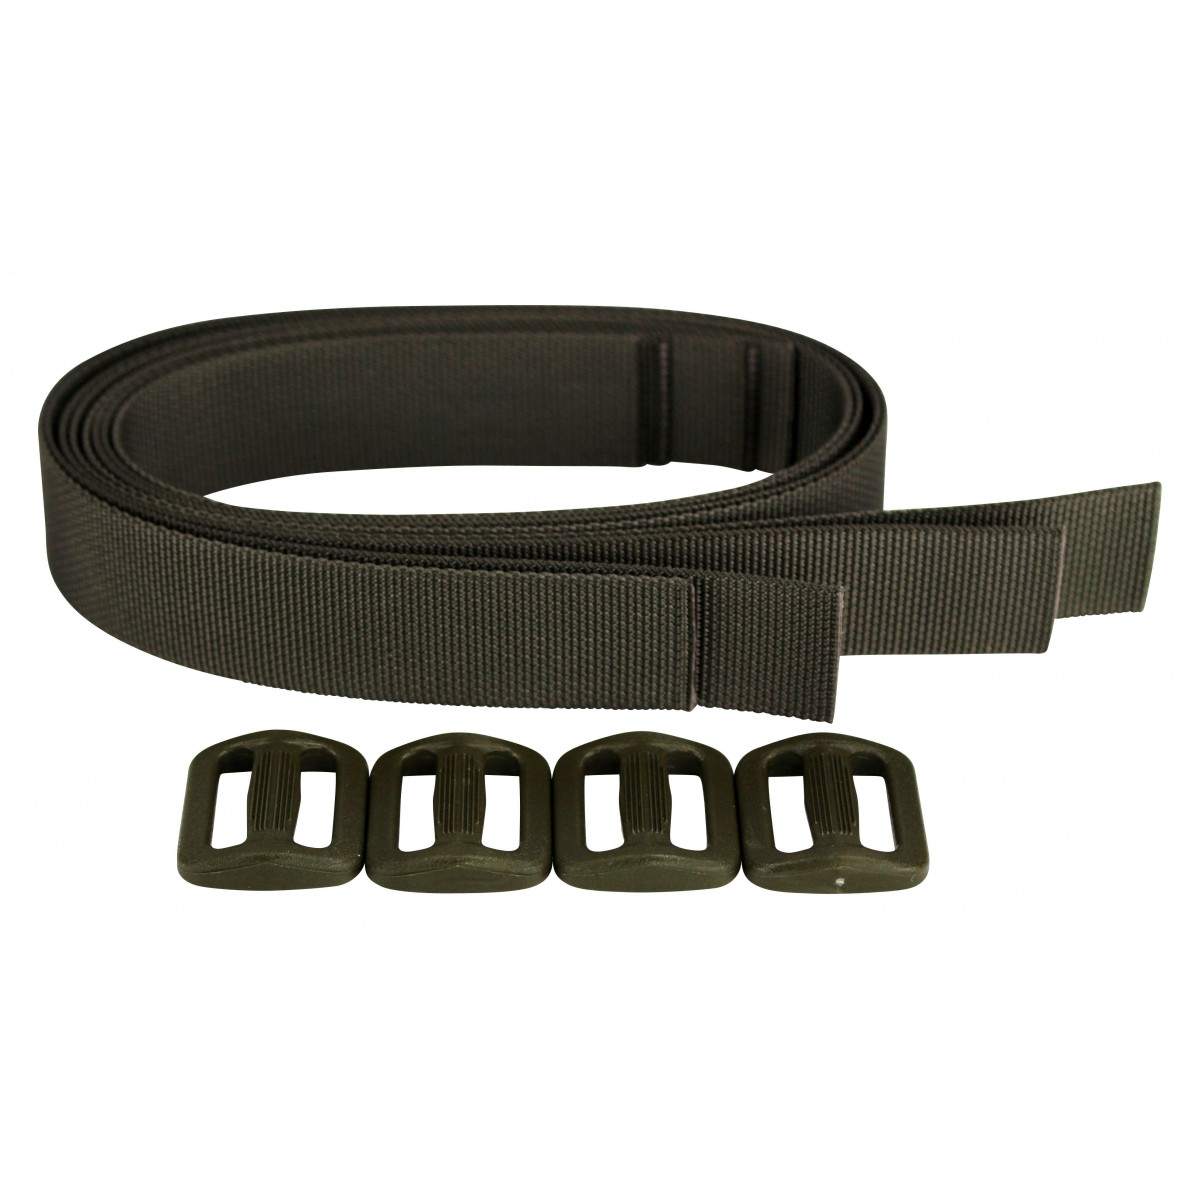 Vier Gurtbänder mit Dreistseck als Verbinder für Harness und Belt